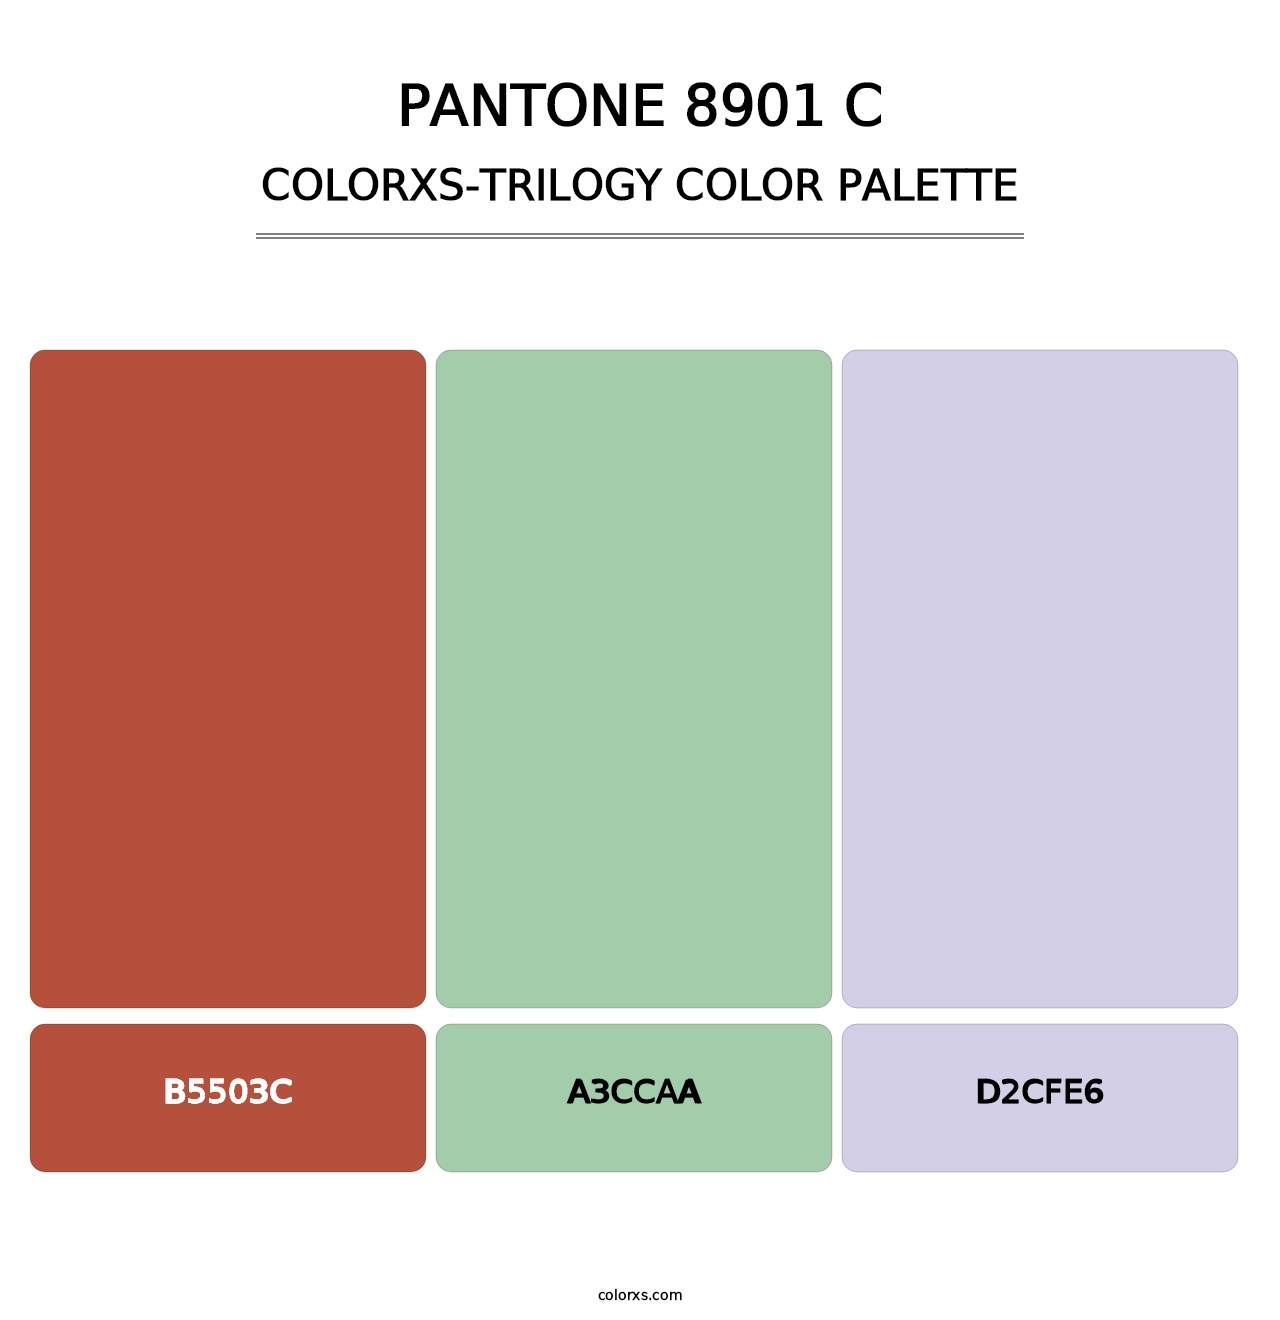 PANTONE 8901 C - Colorxs Trilogy Palette